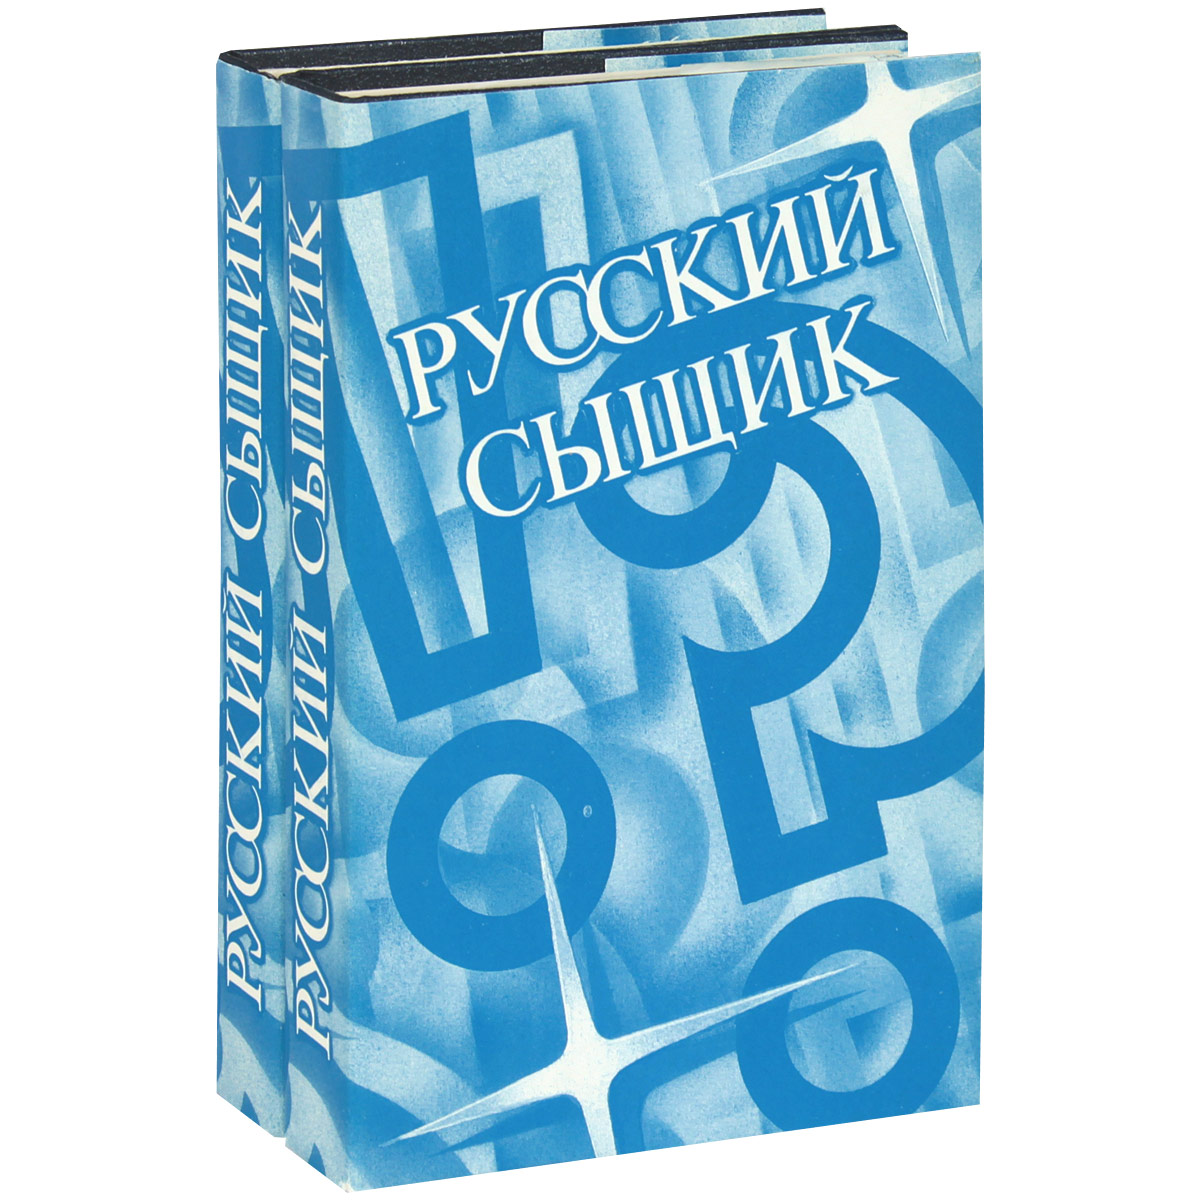 Русский сыщик. Том 1-2 (комплект из 2 книг)